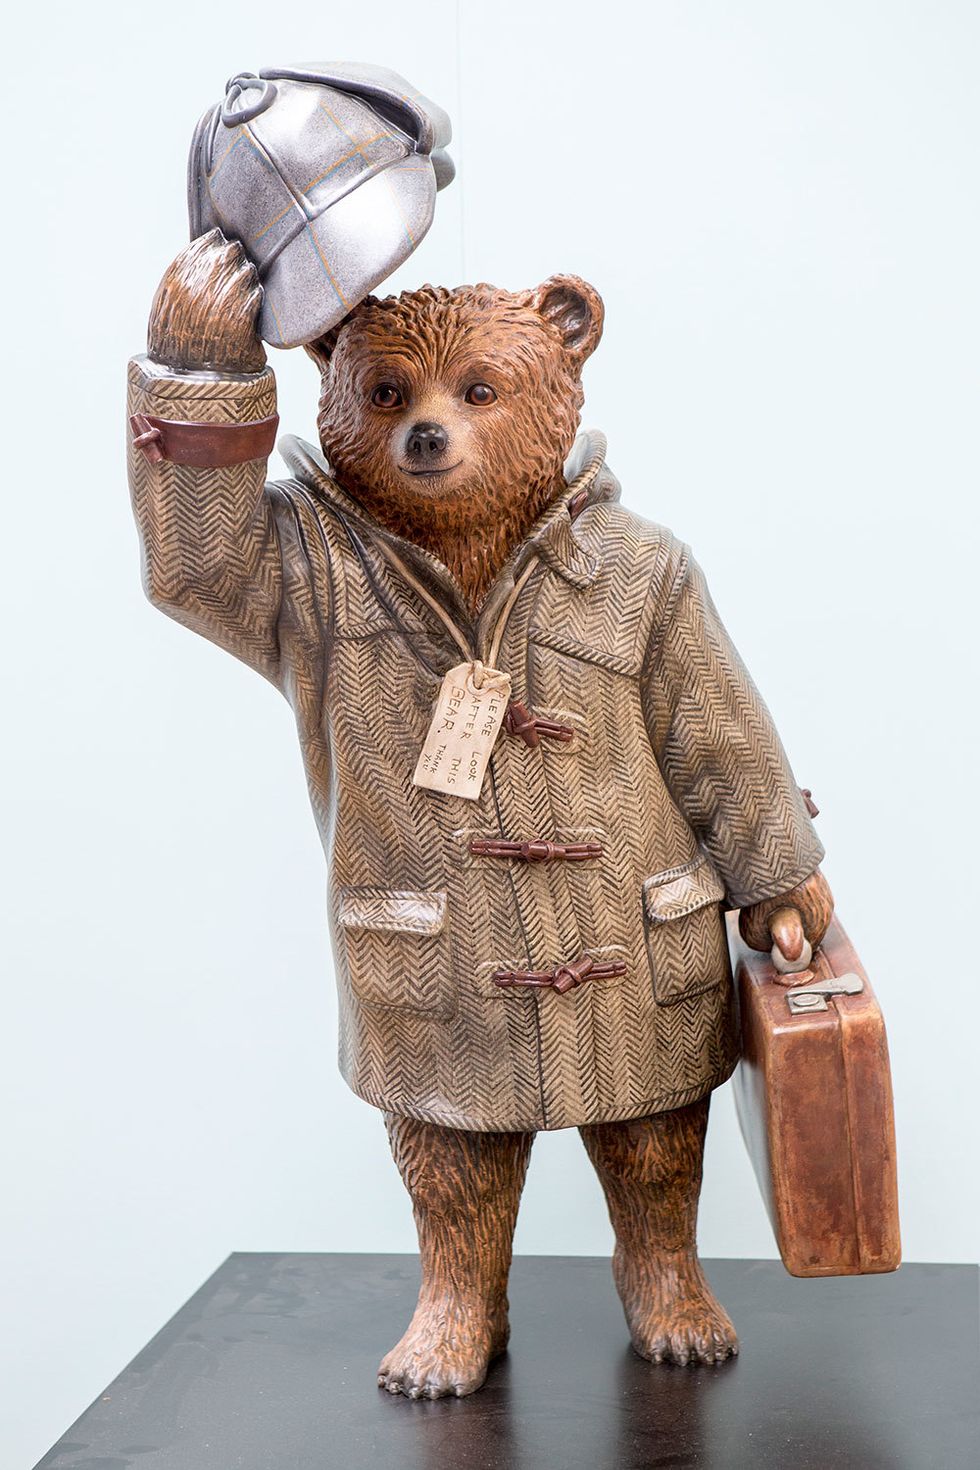 Sculpture, Snout, Art, Teddy bear, Baggage, Figurine, Creative arts, Briefcase, Toy, Animal figure, 